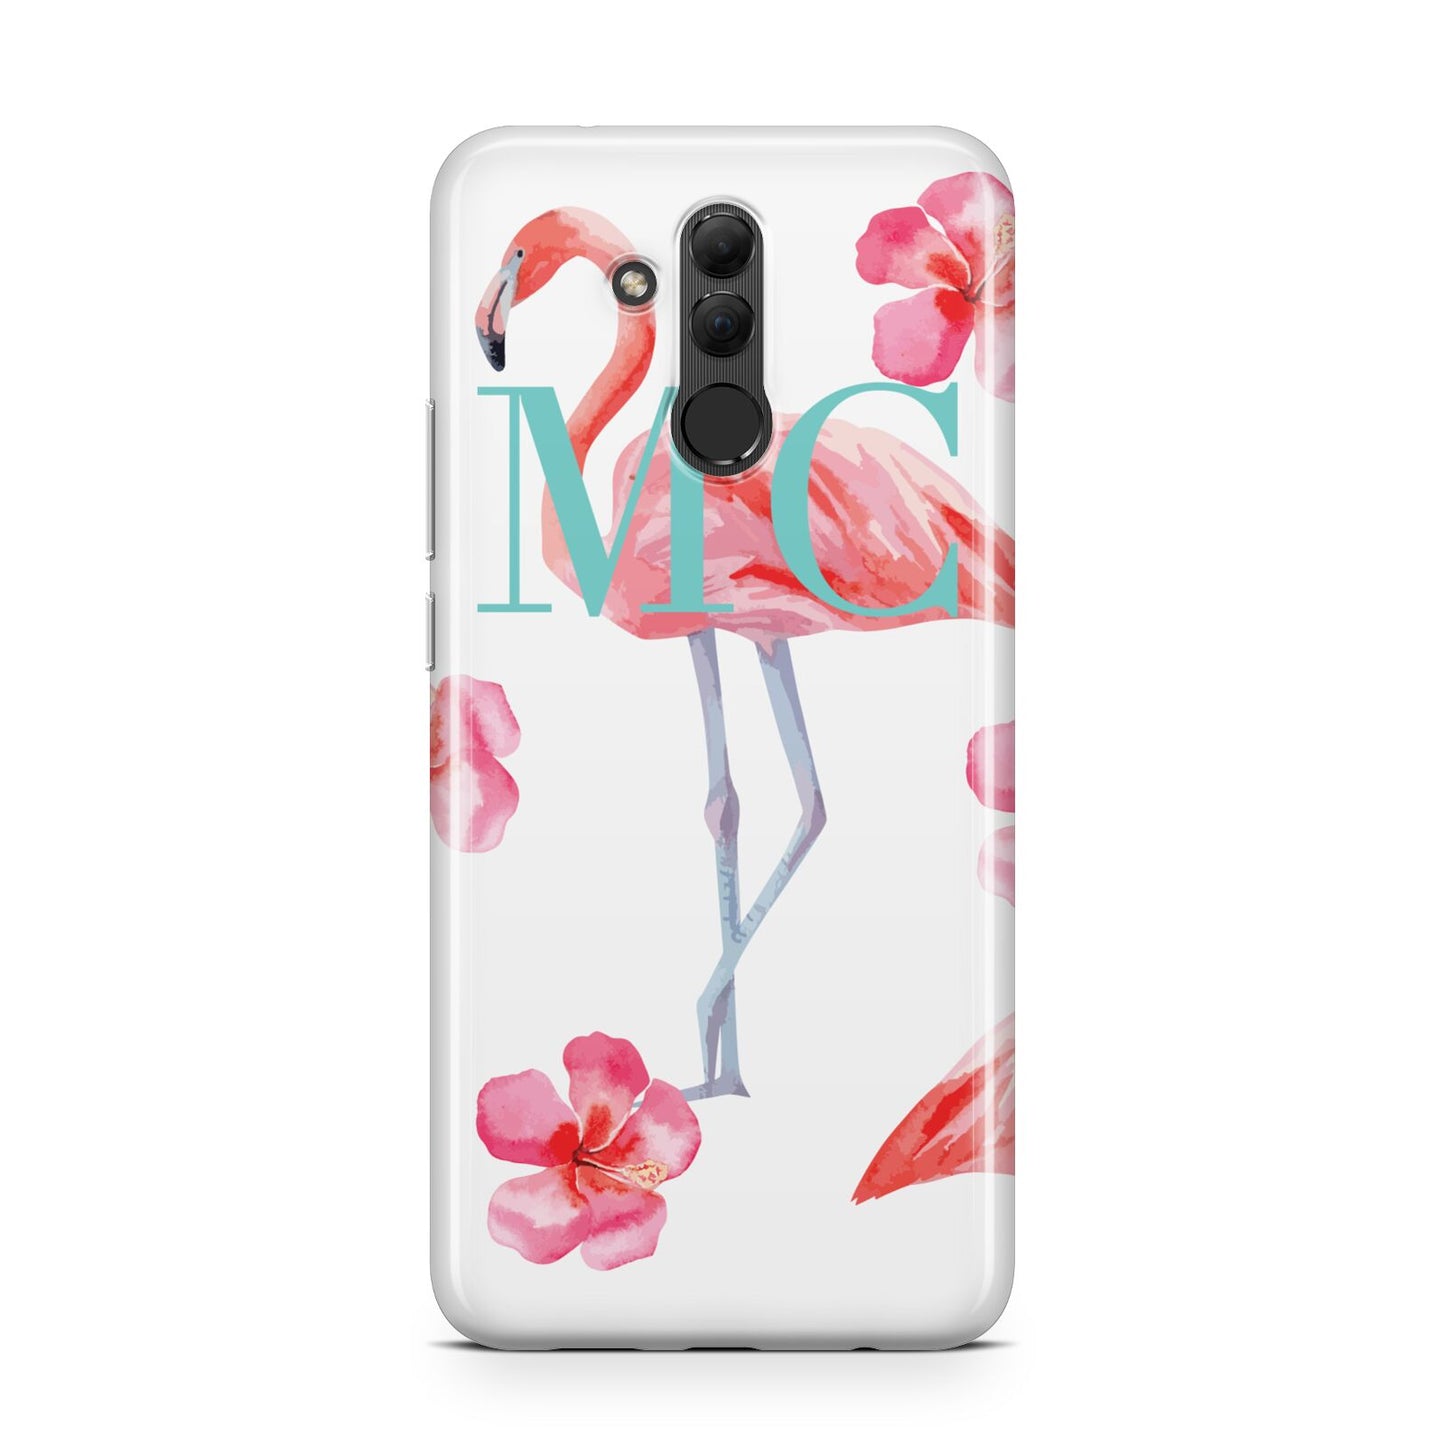 Personalised Initials Flamingo 3 Huawei Mate 20 Lite